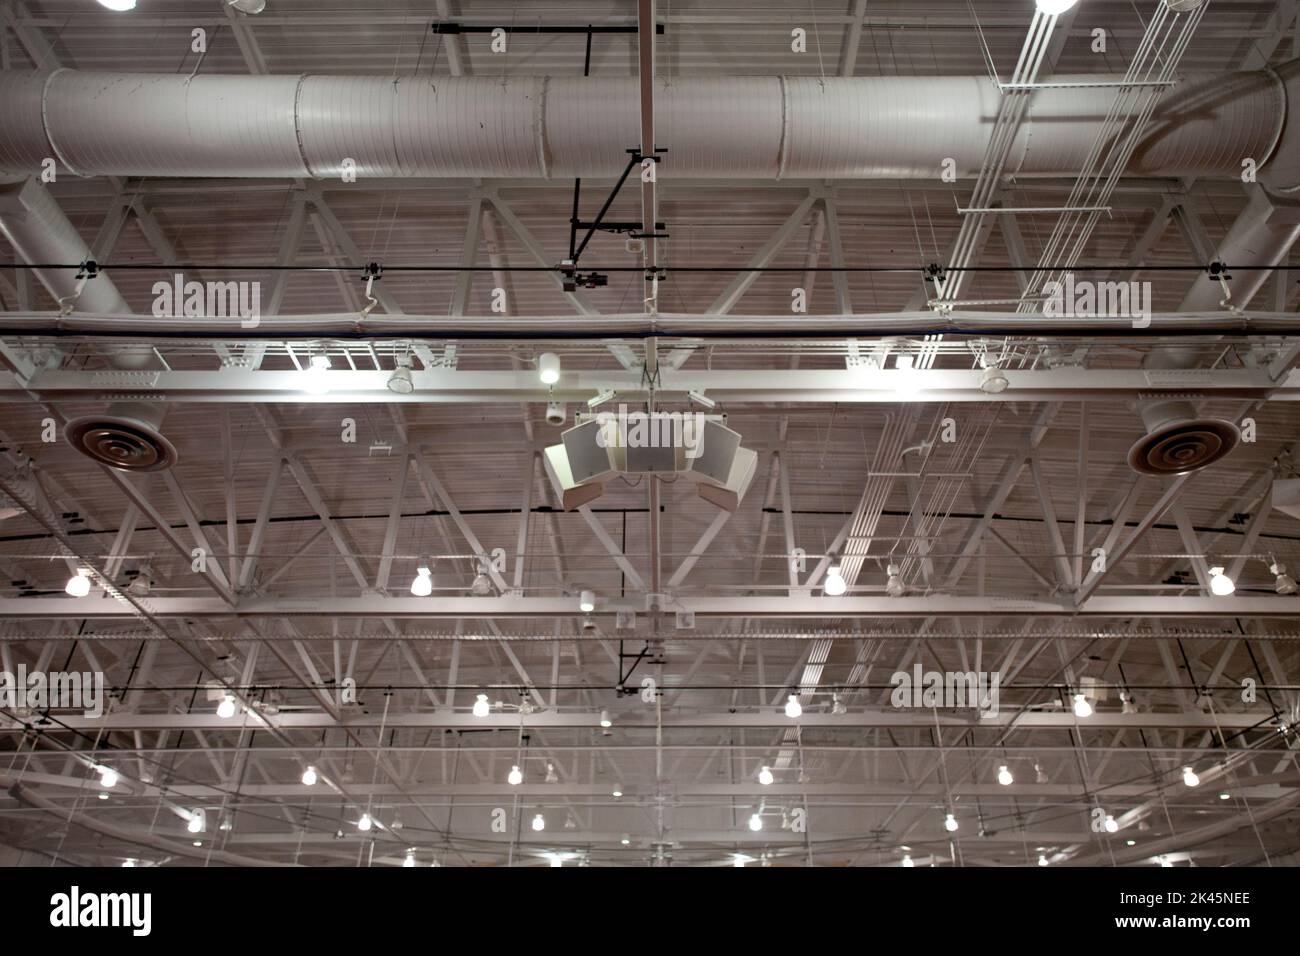 El techo de un gran edificio, con conductos y tuberías de aire, vigas, pórtico y montantes, altavoces del sistema de sonido, luces y extractores. Foto de stock